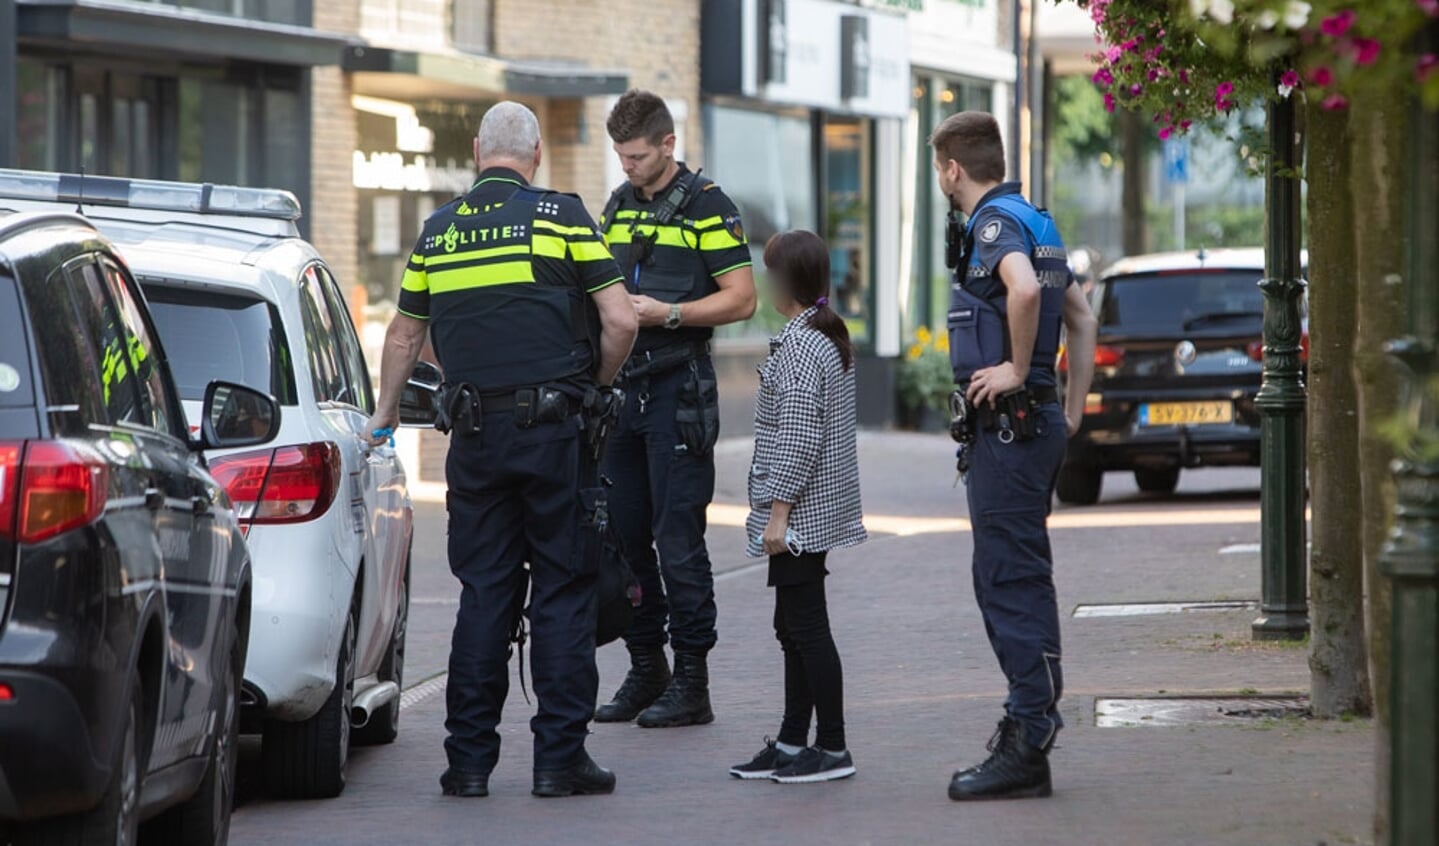 Zeker 1 aanhouding bij controle handhaving - politie in Baarn.
